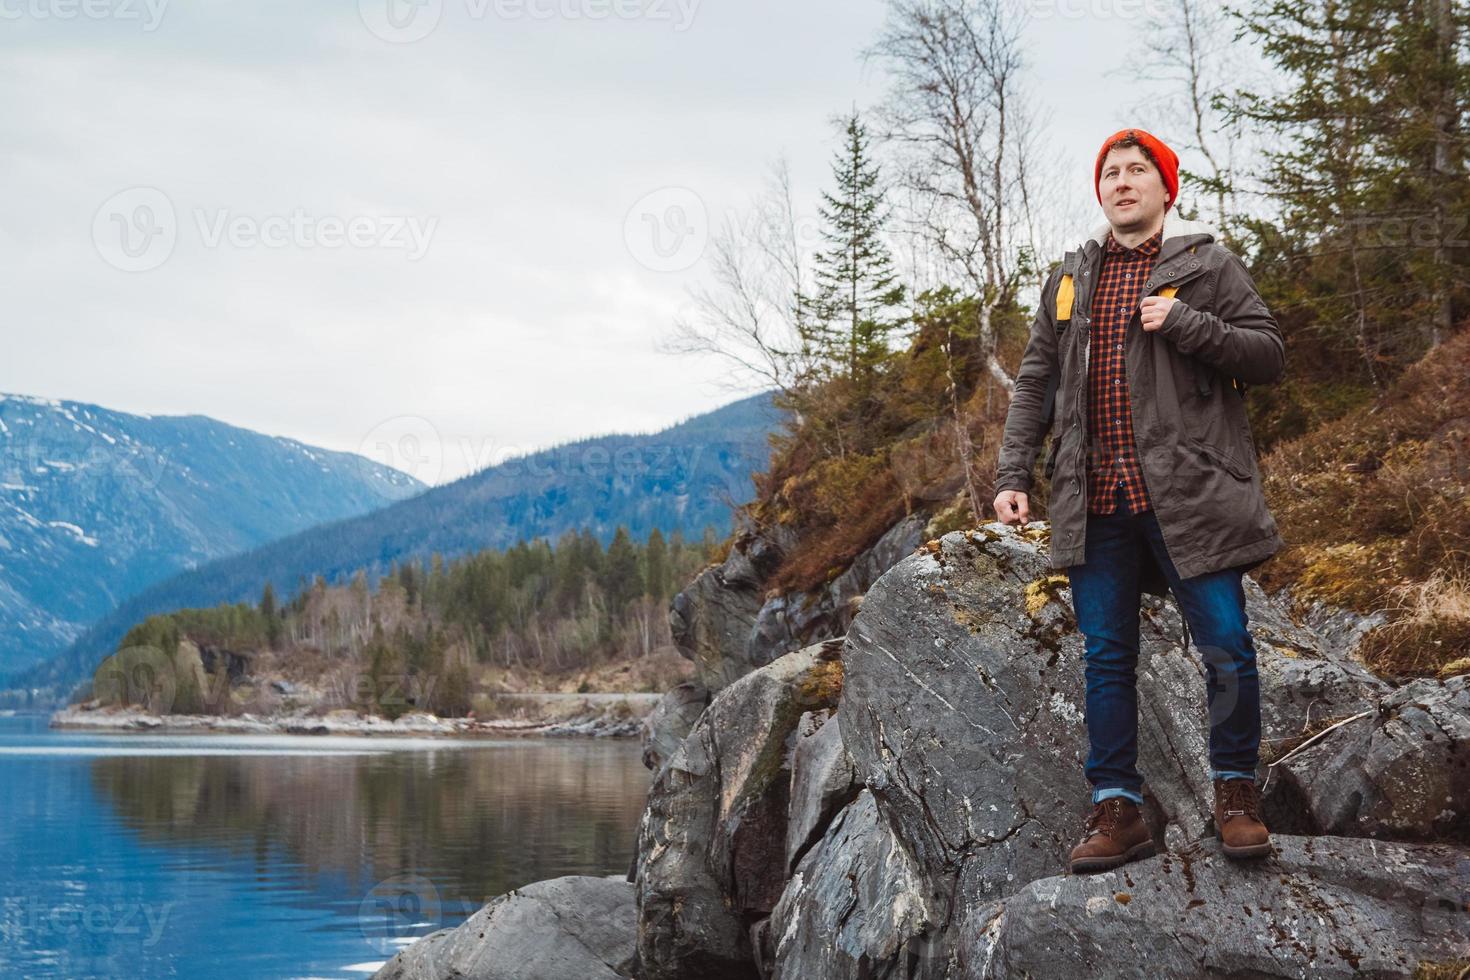 joven con una mochila amarilla con un sombrero rojo de pie sobre una roca en el fondo de la montaña y el lago. espacio para su mensaje de texto o contenido promocional. concepto de estilo de vida de viaje foto